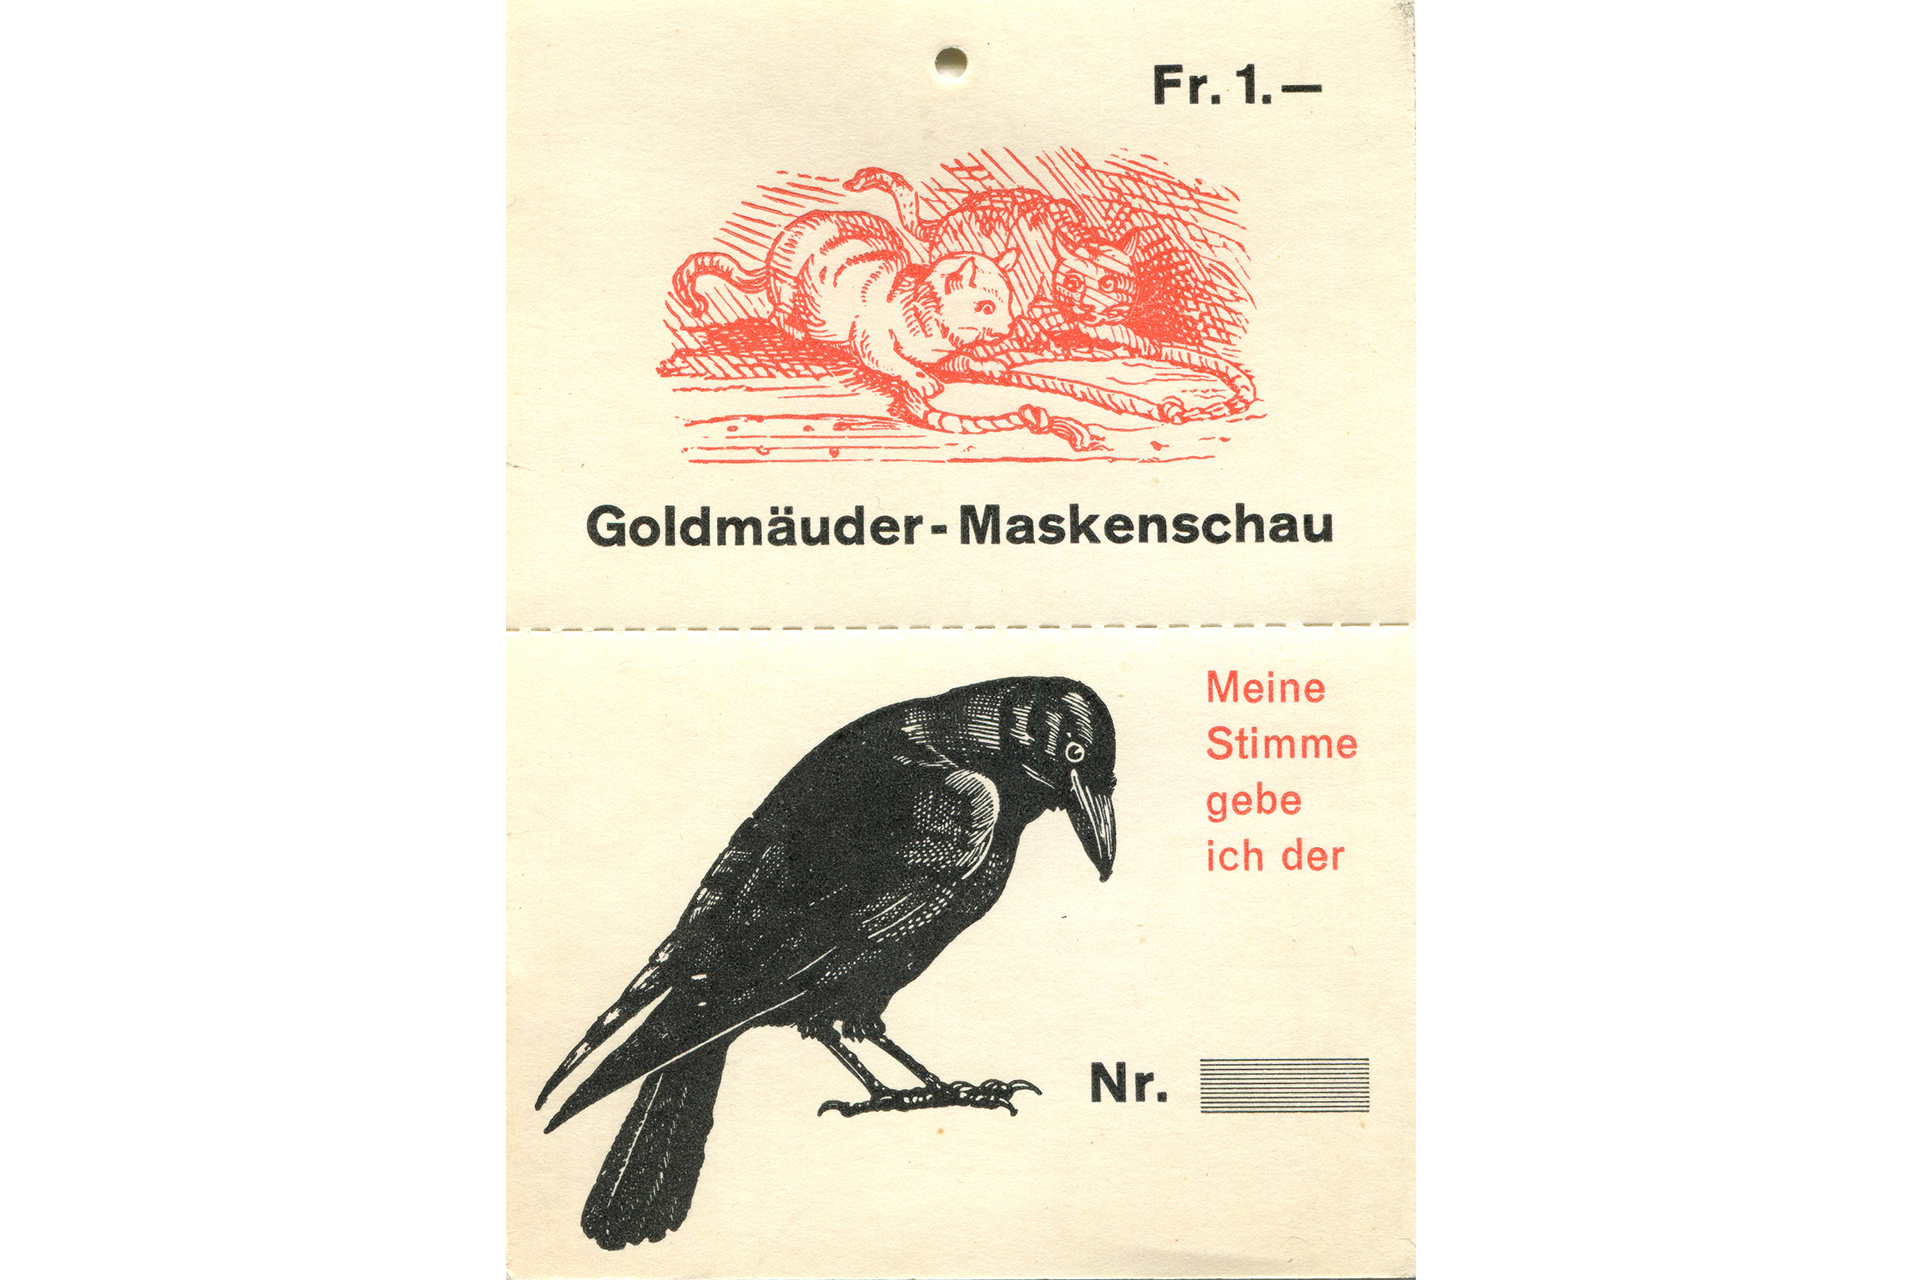 Fasnachtsgesellschaft Goldmäuder Einsiedeln, Einsiedler Fasnacht, Archiv